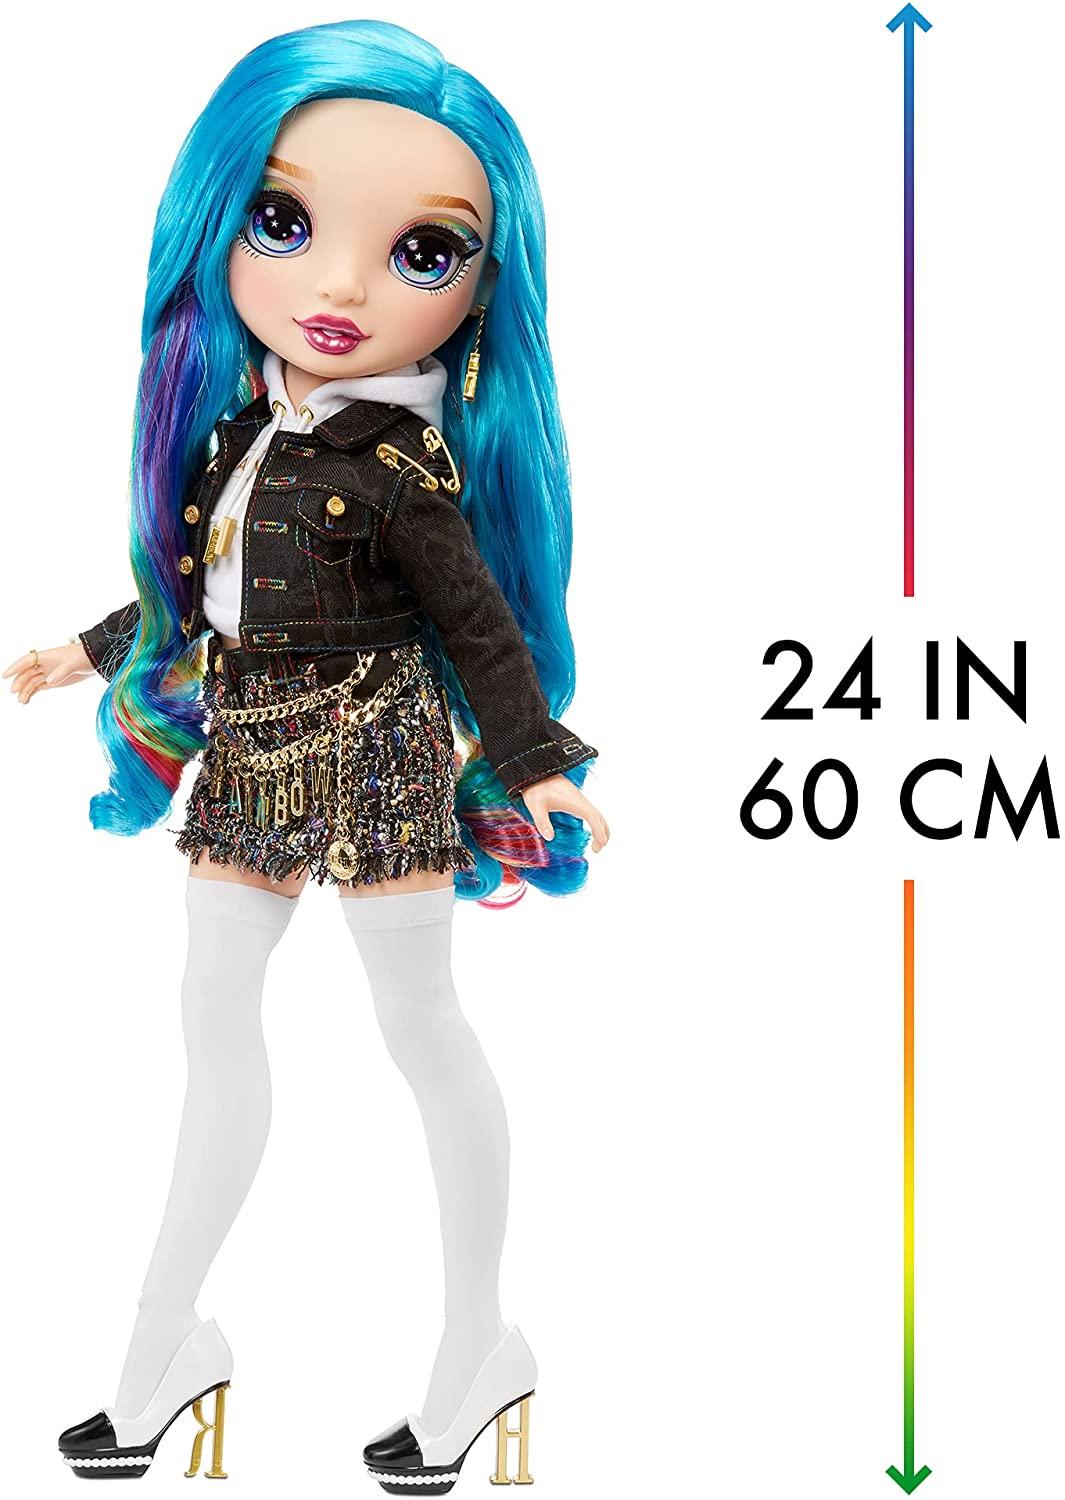 Rainbow High Large Doll - My Runway Friend - Amaya Raine